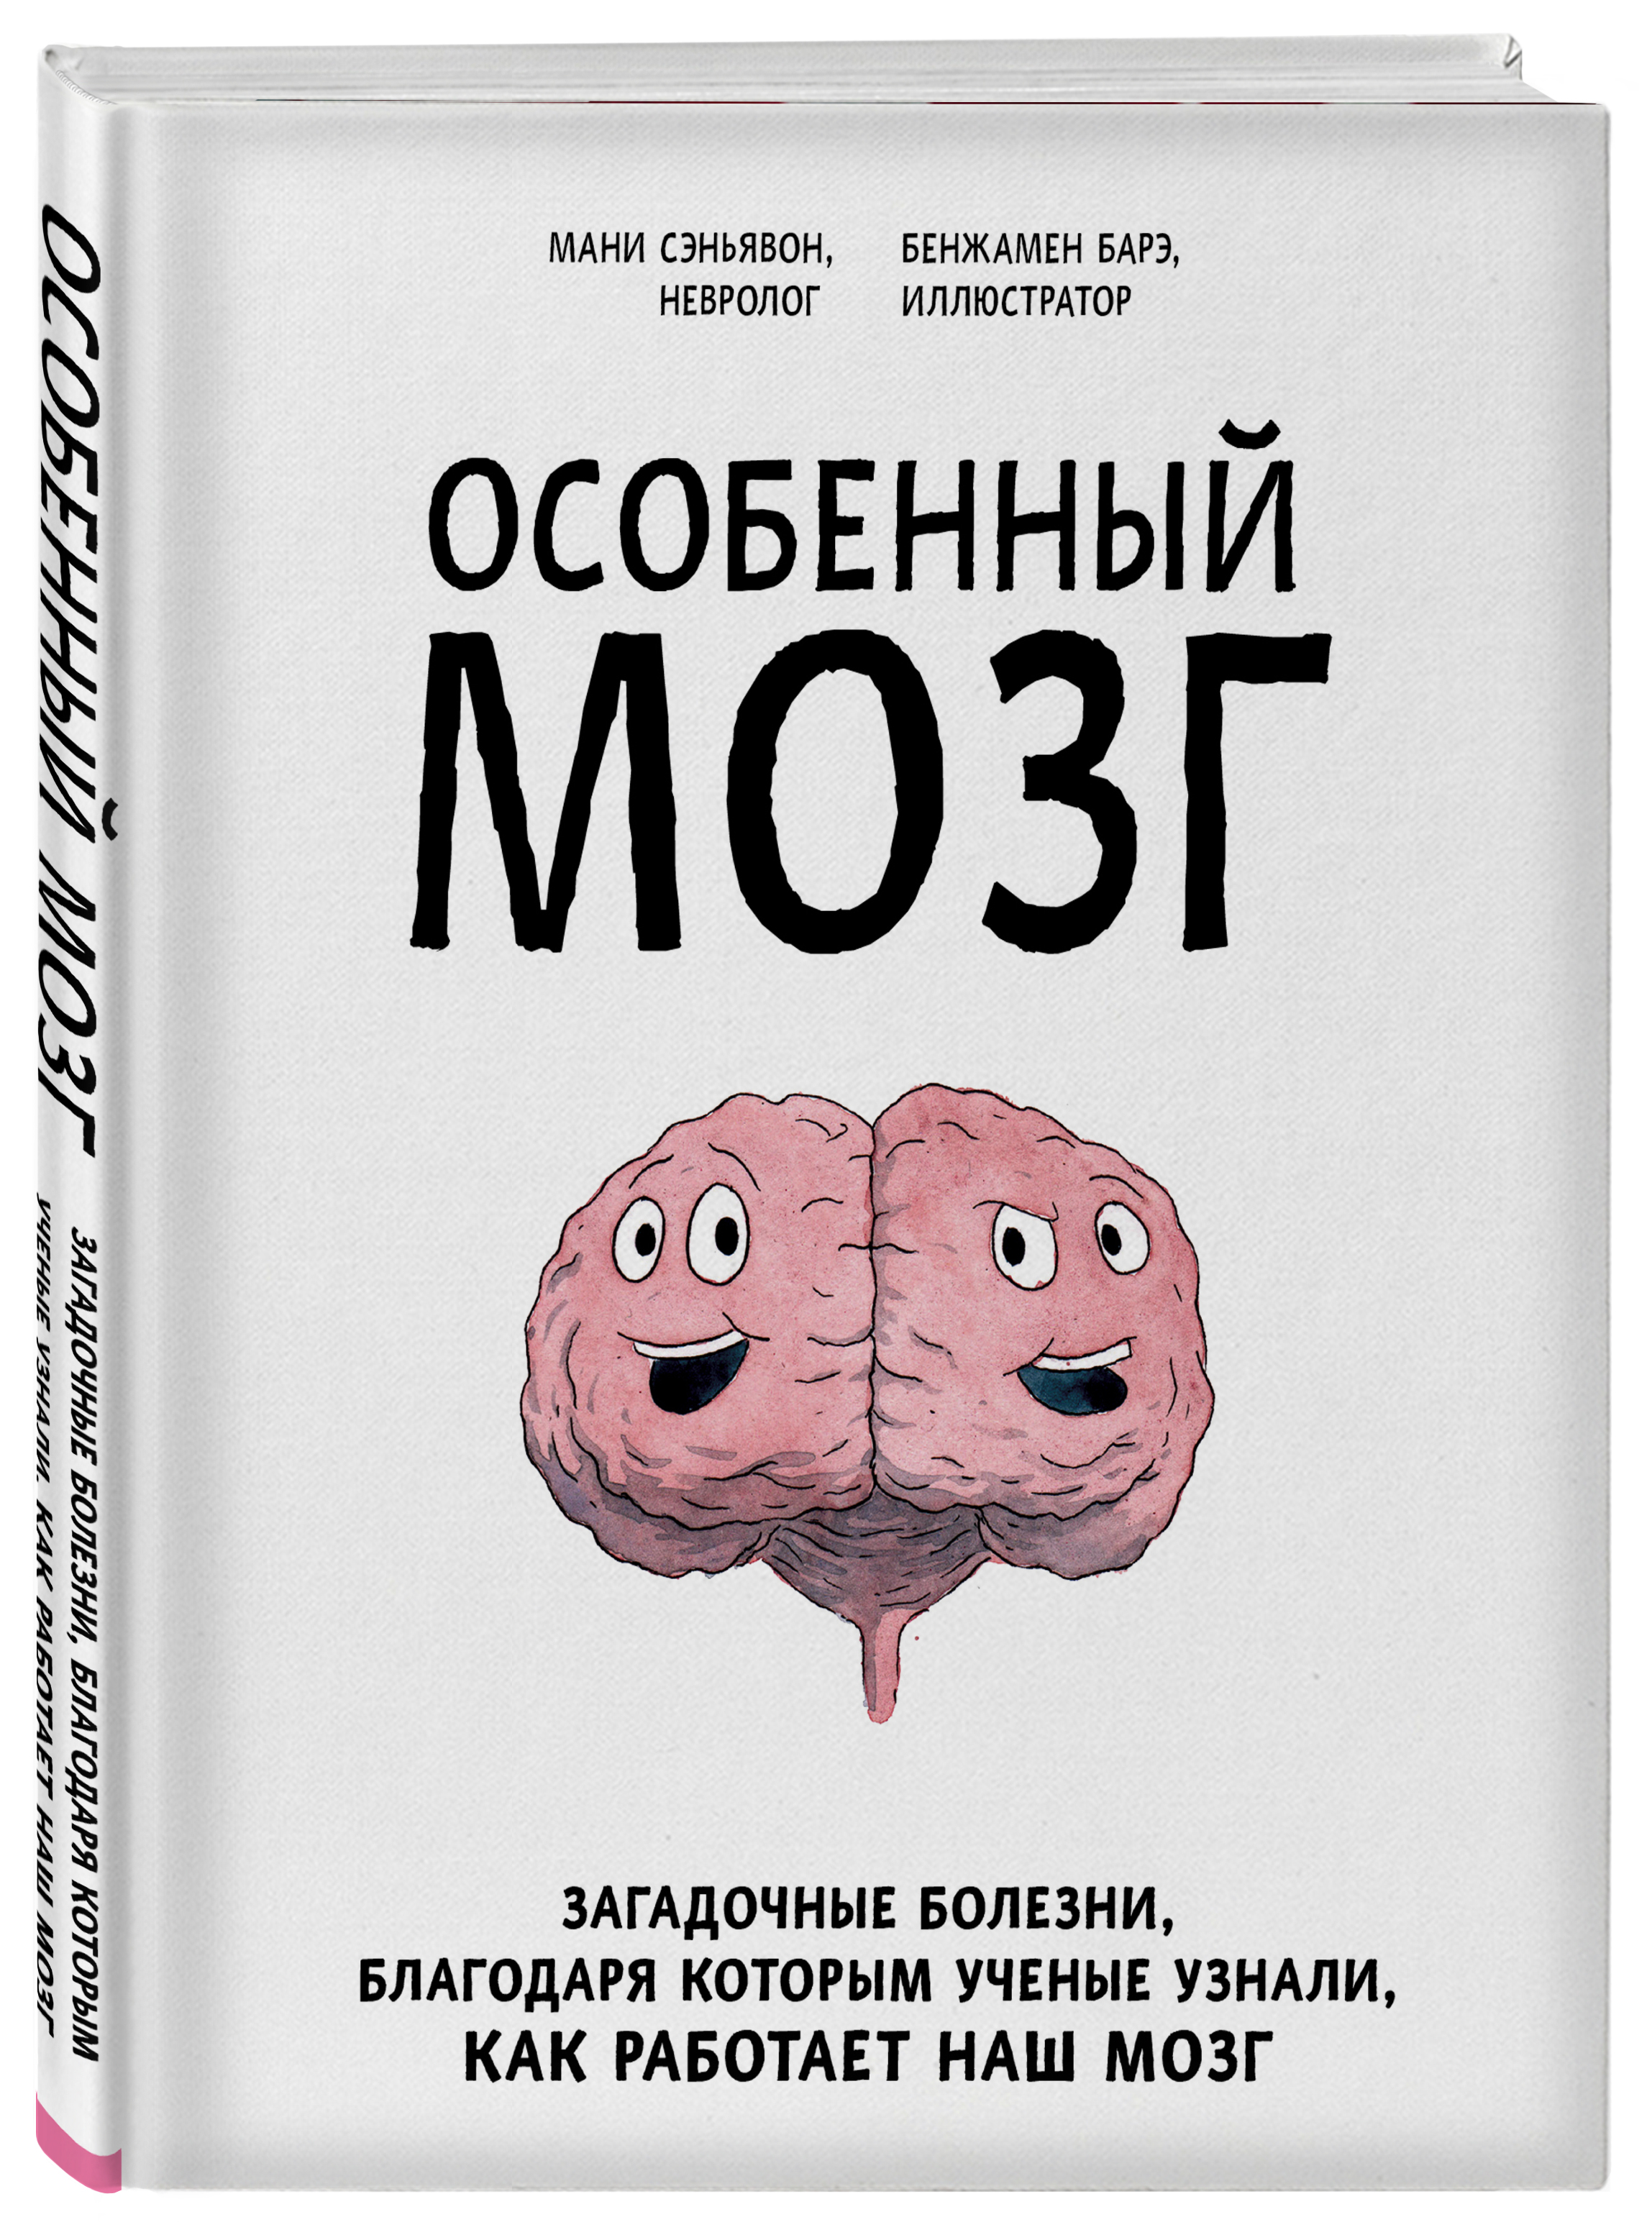 Читать книгу для мозгов. Особенный мозг. Особенный мозг книга. Загадочный мозг. Наш мозг книга.